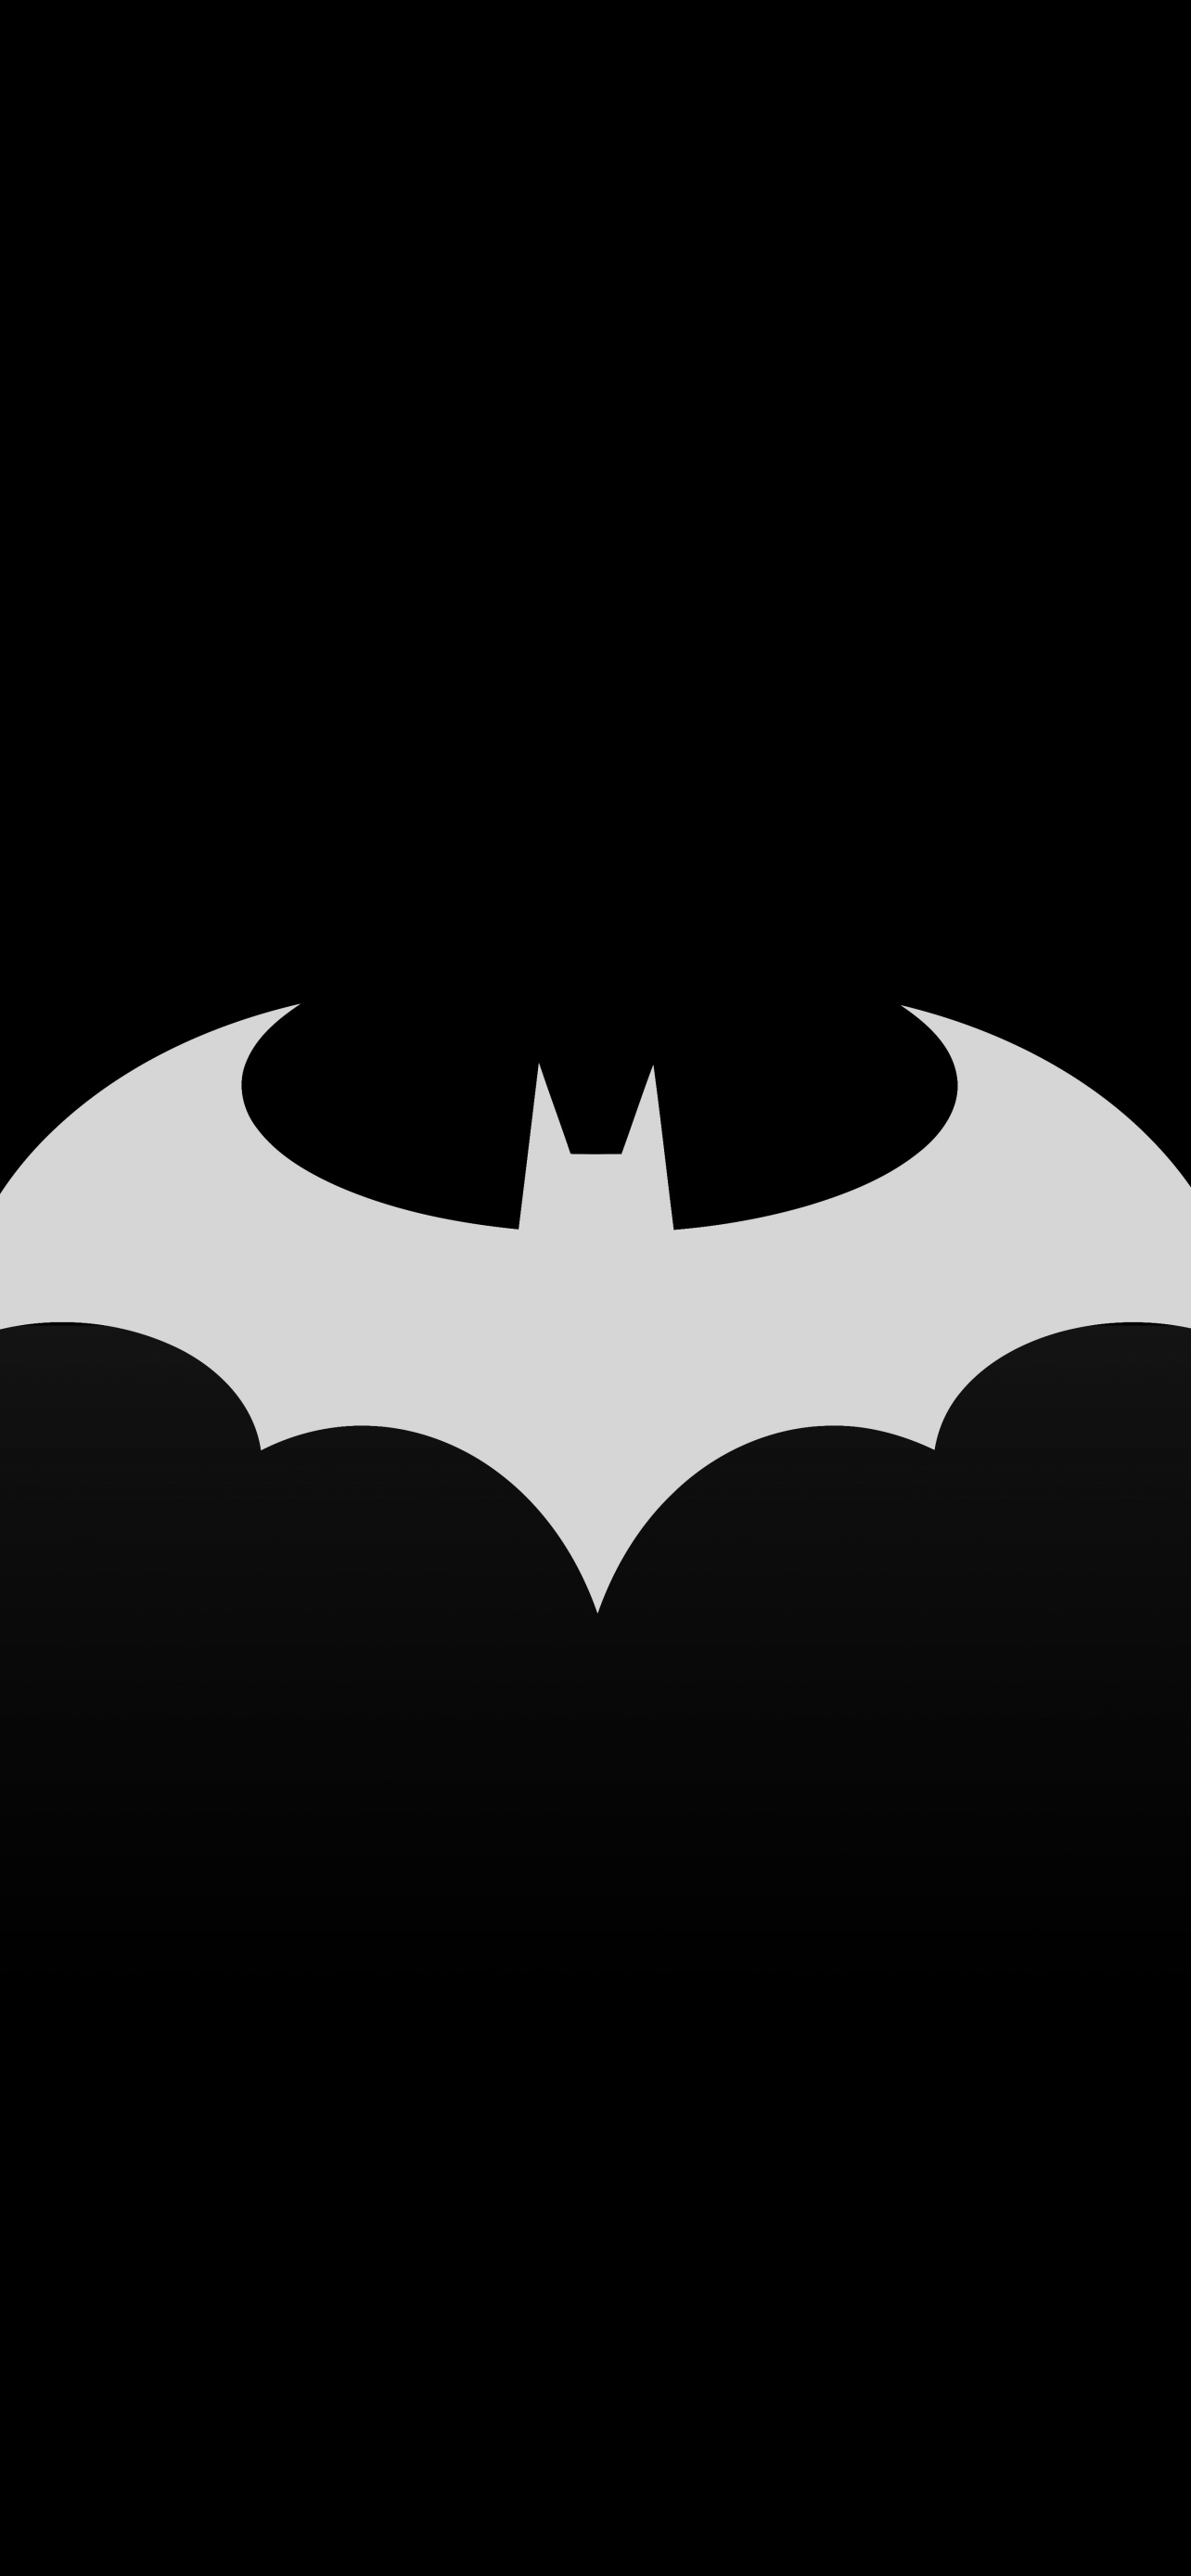 Batman iPhone wallpaper for iPhone 6 750 Batman The Dark Knight Rises